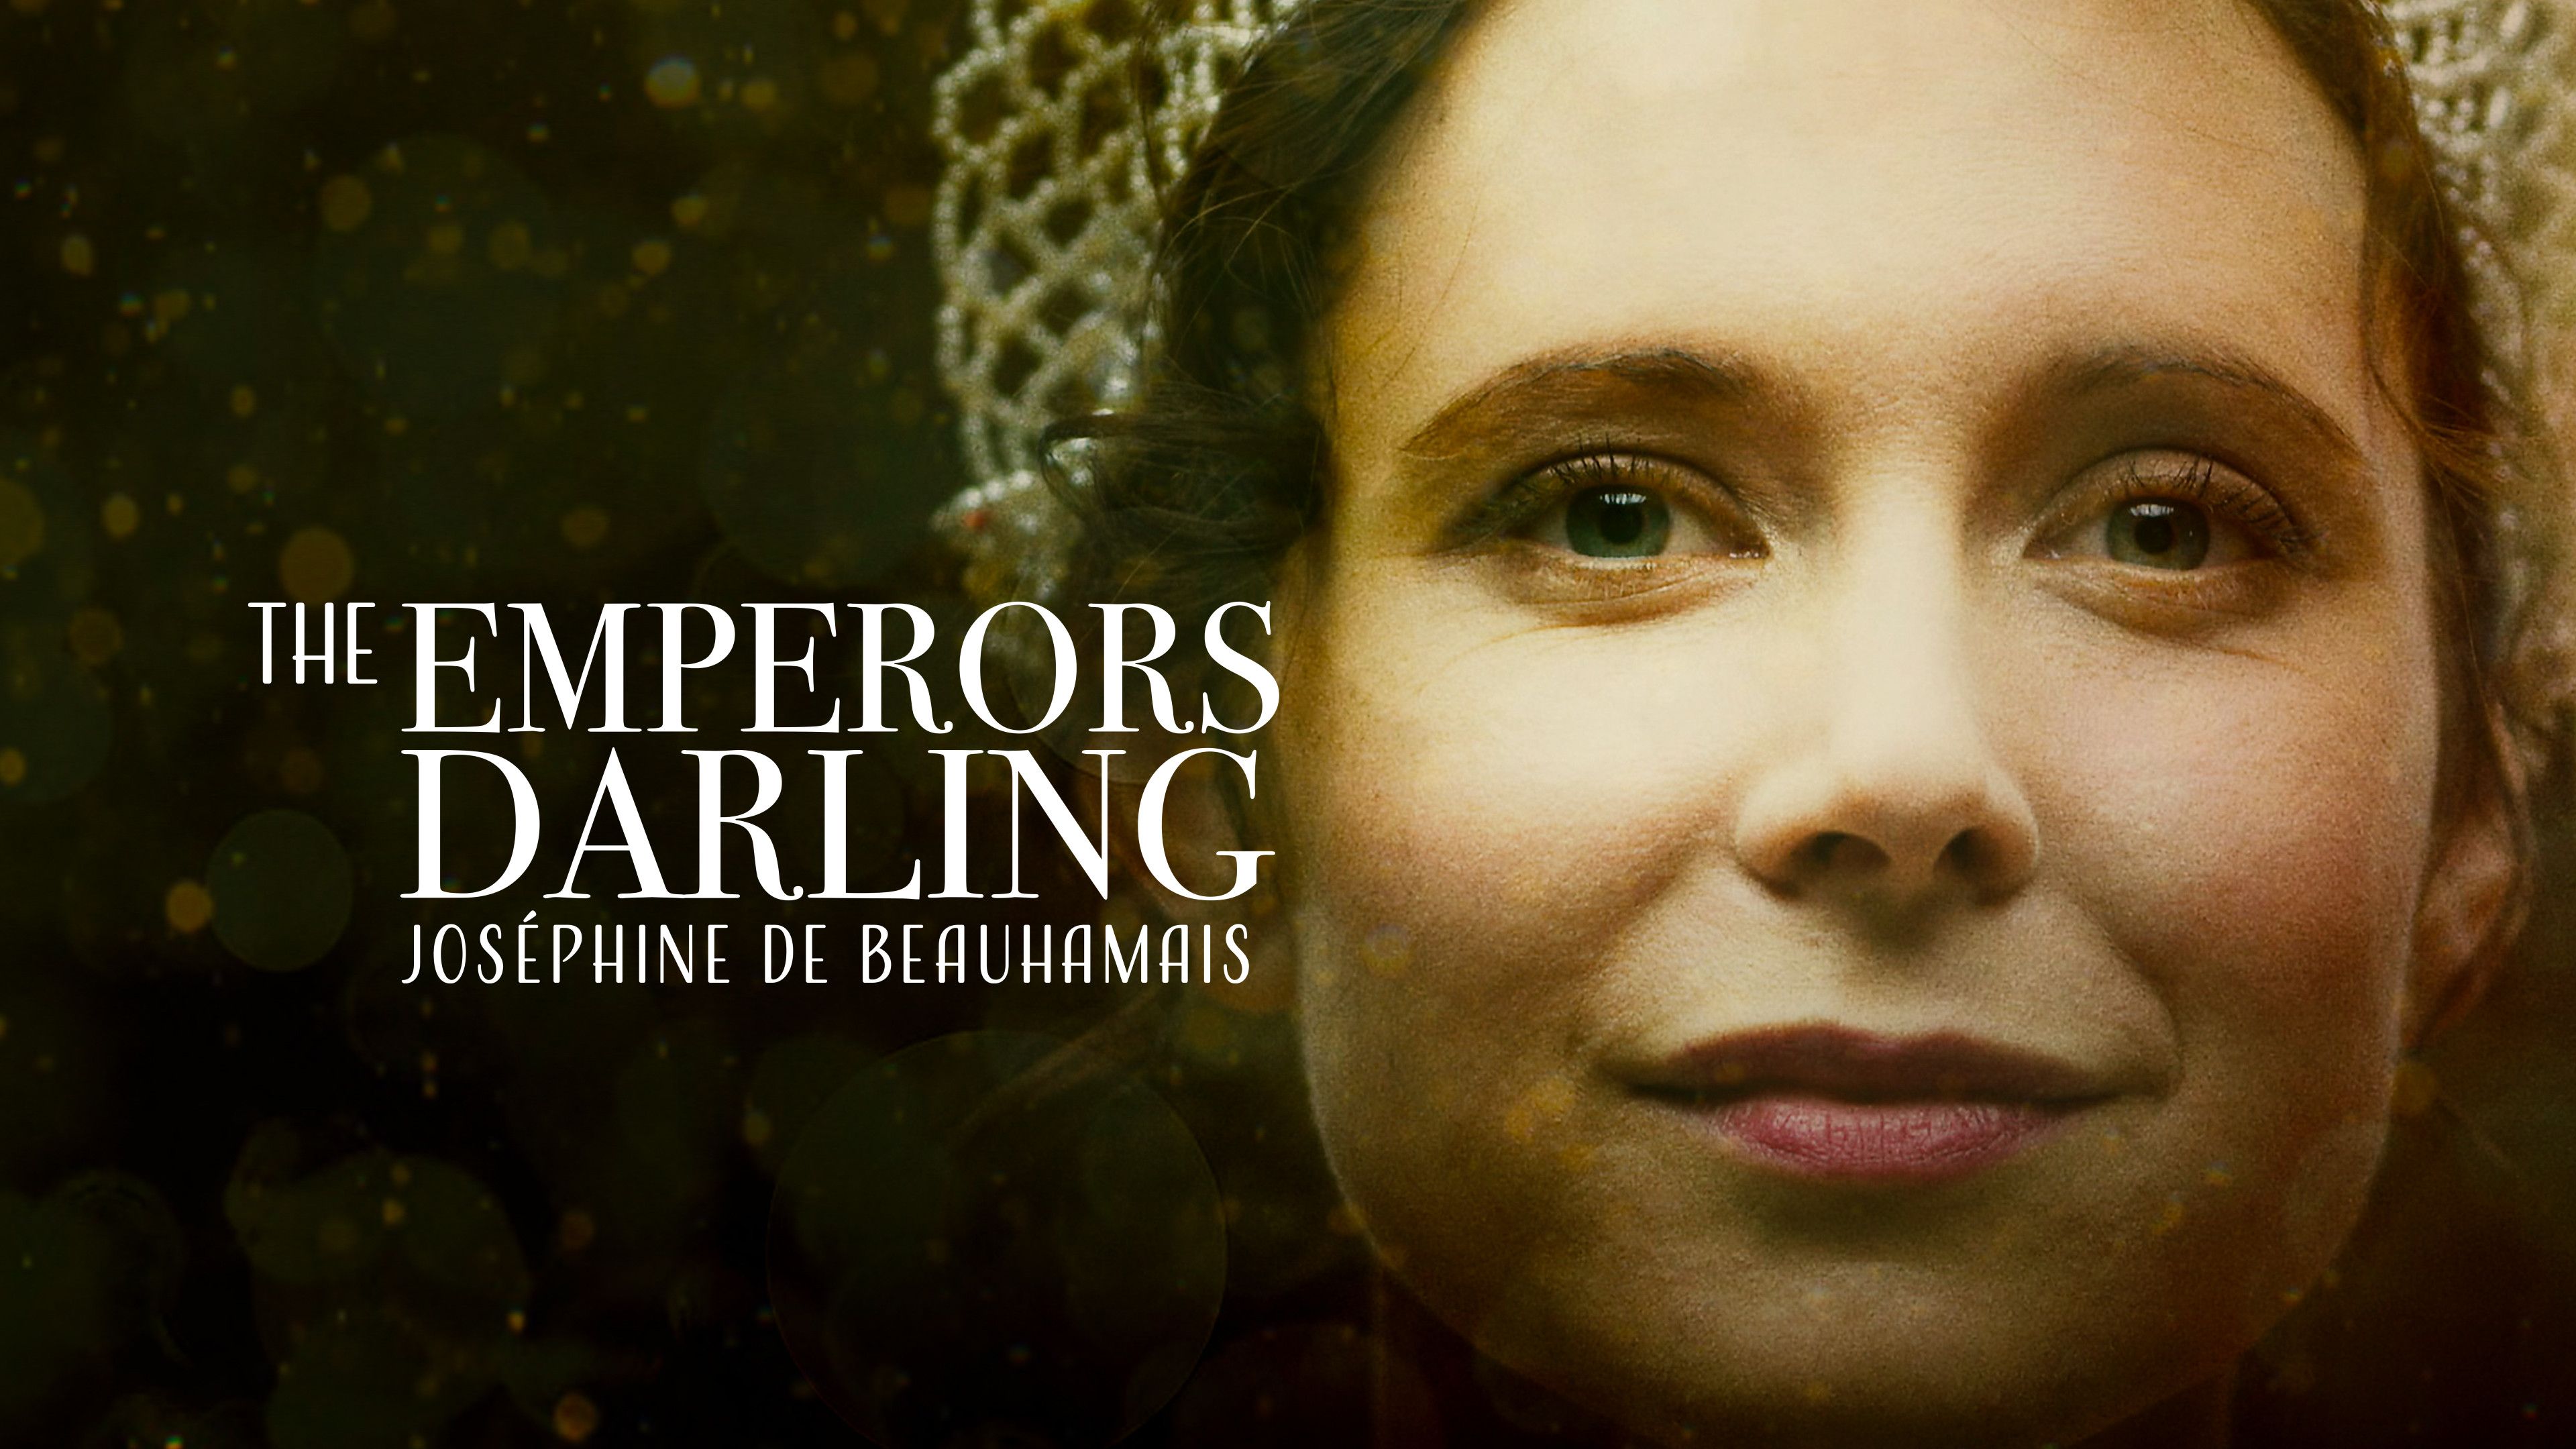 The Emperor's Darling - Josephine de Beauharnais